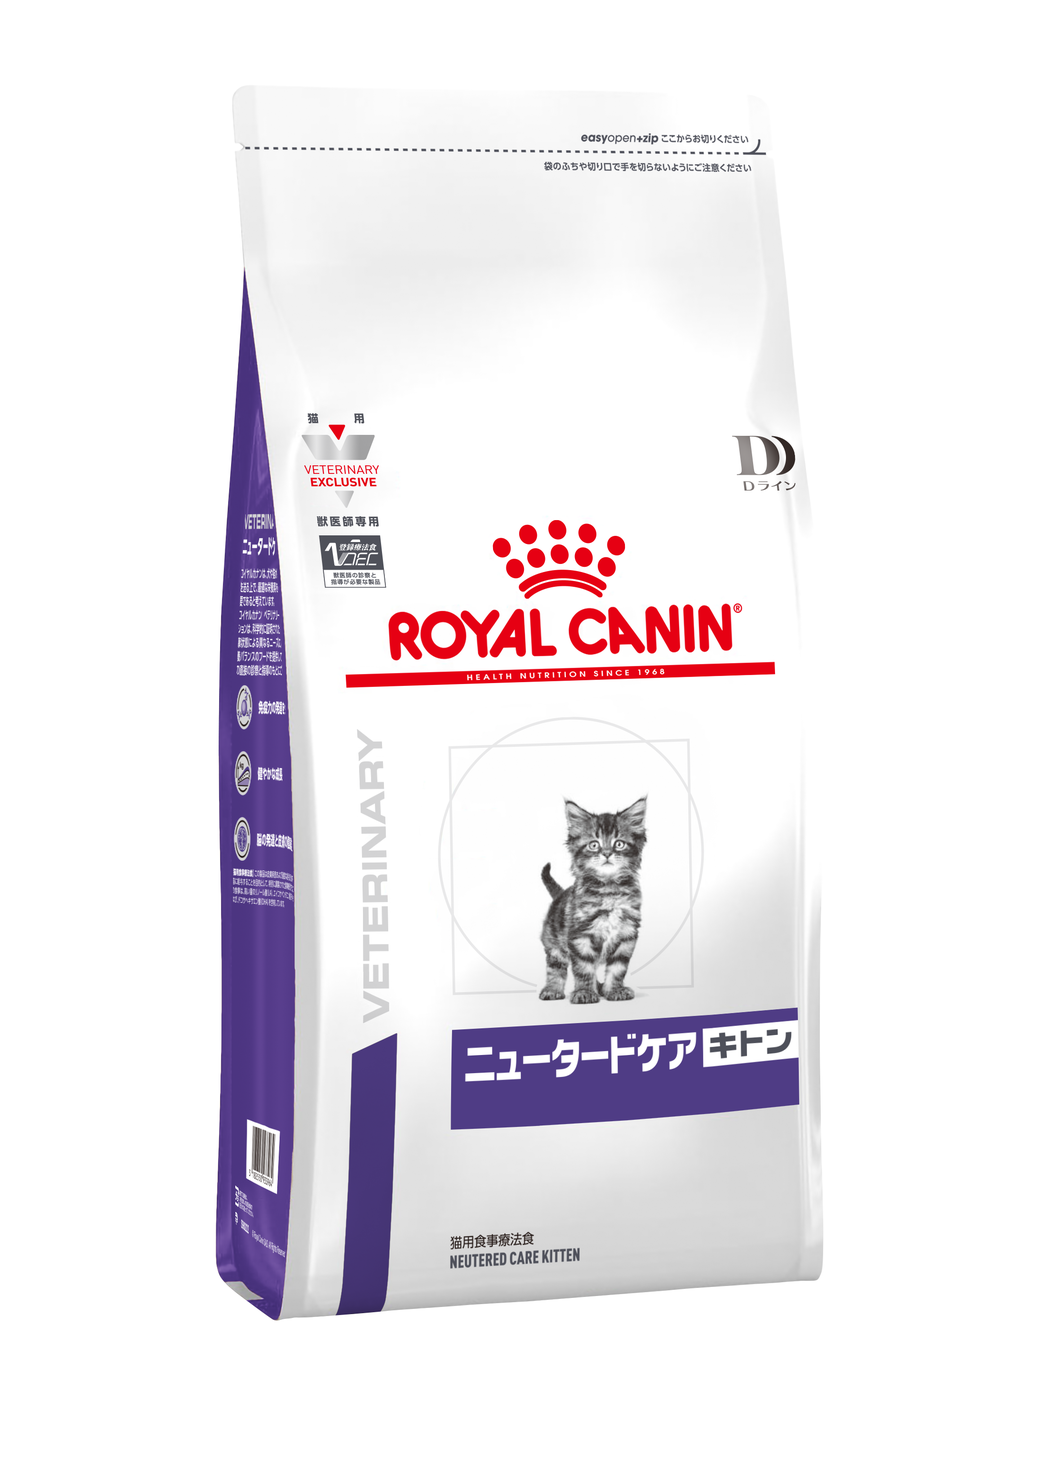 ロイヤルカナン猫用腎臓サポートスペシャル30g✖️10個 特別セール品